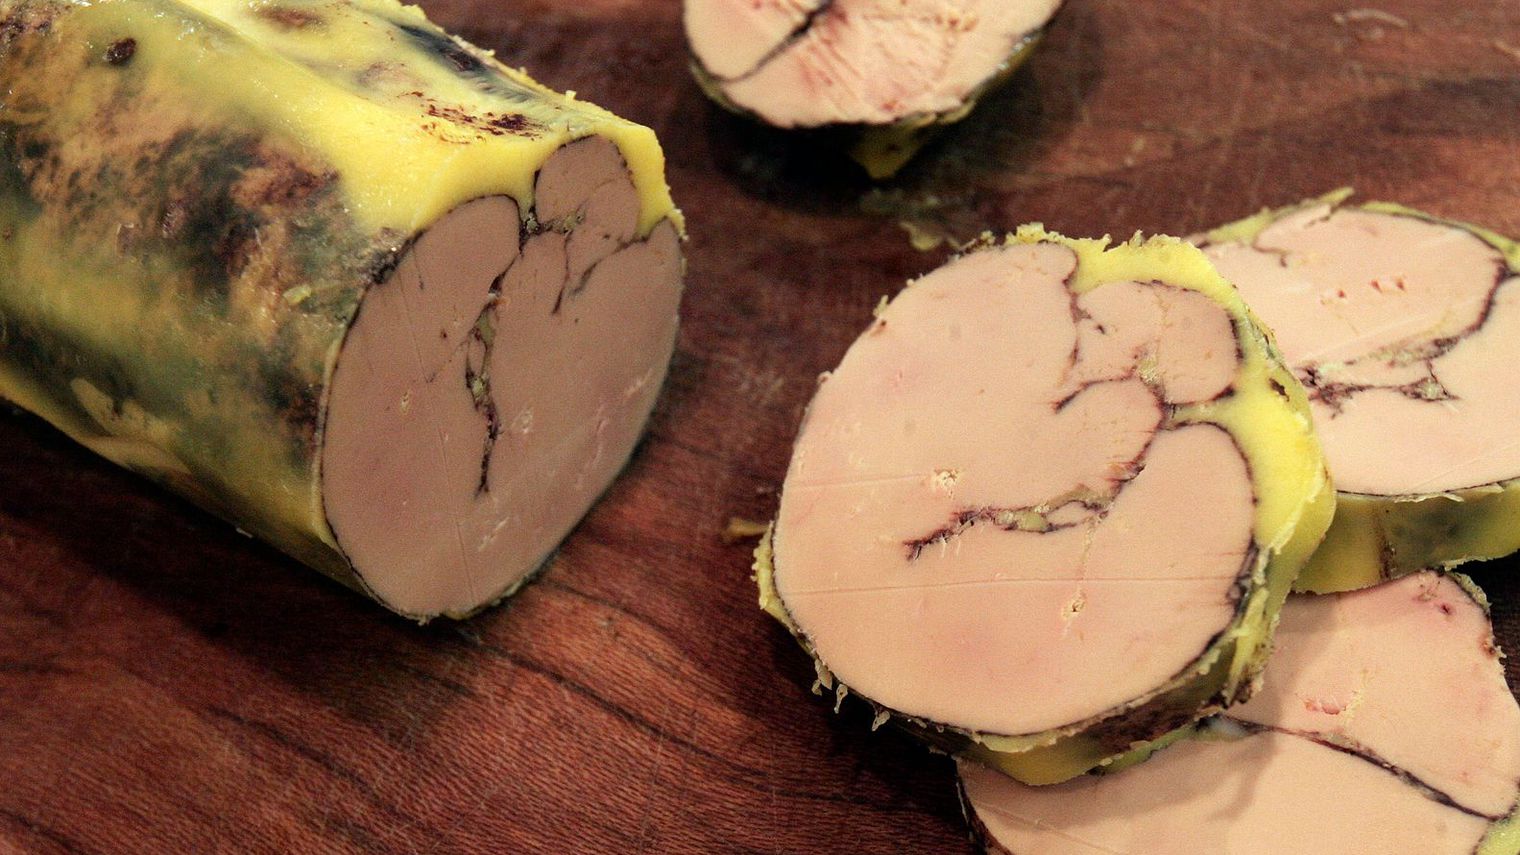 Le foie gras*